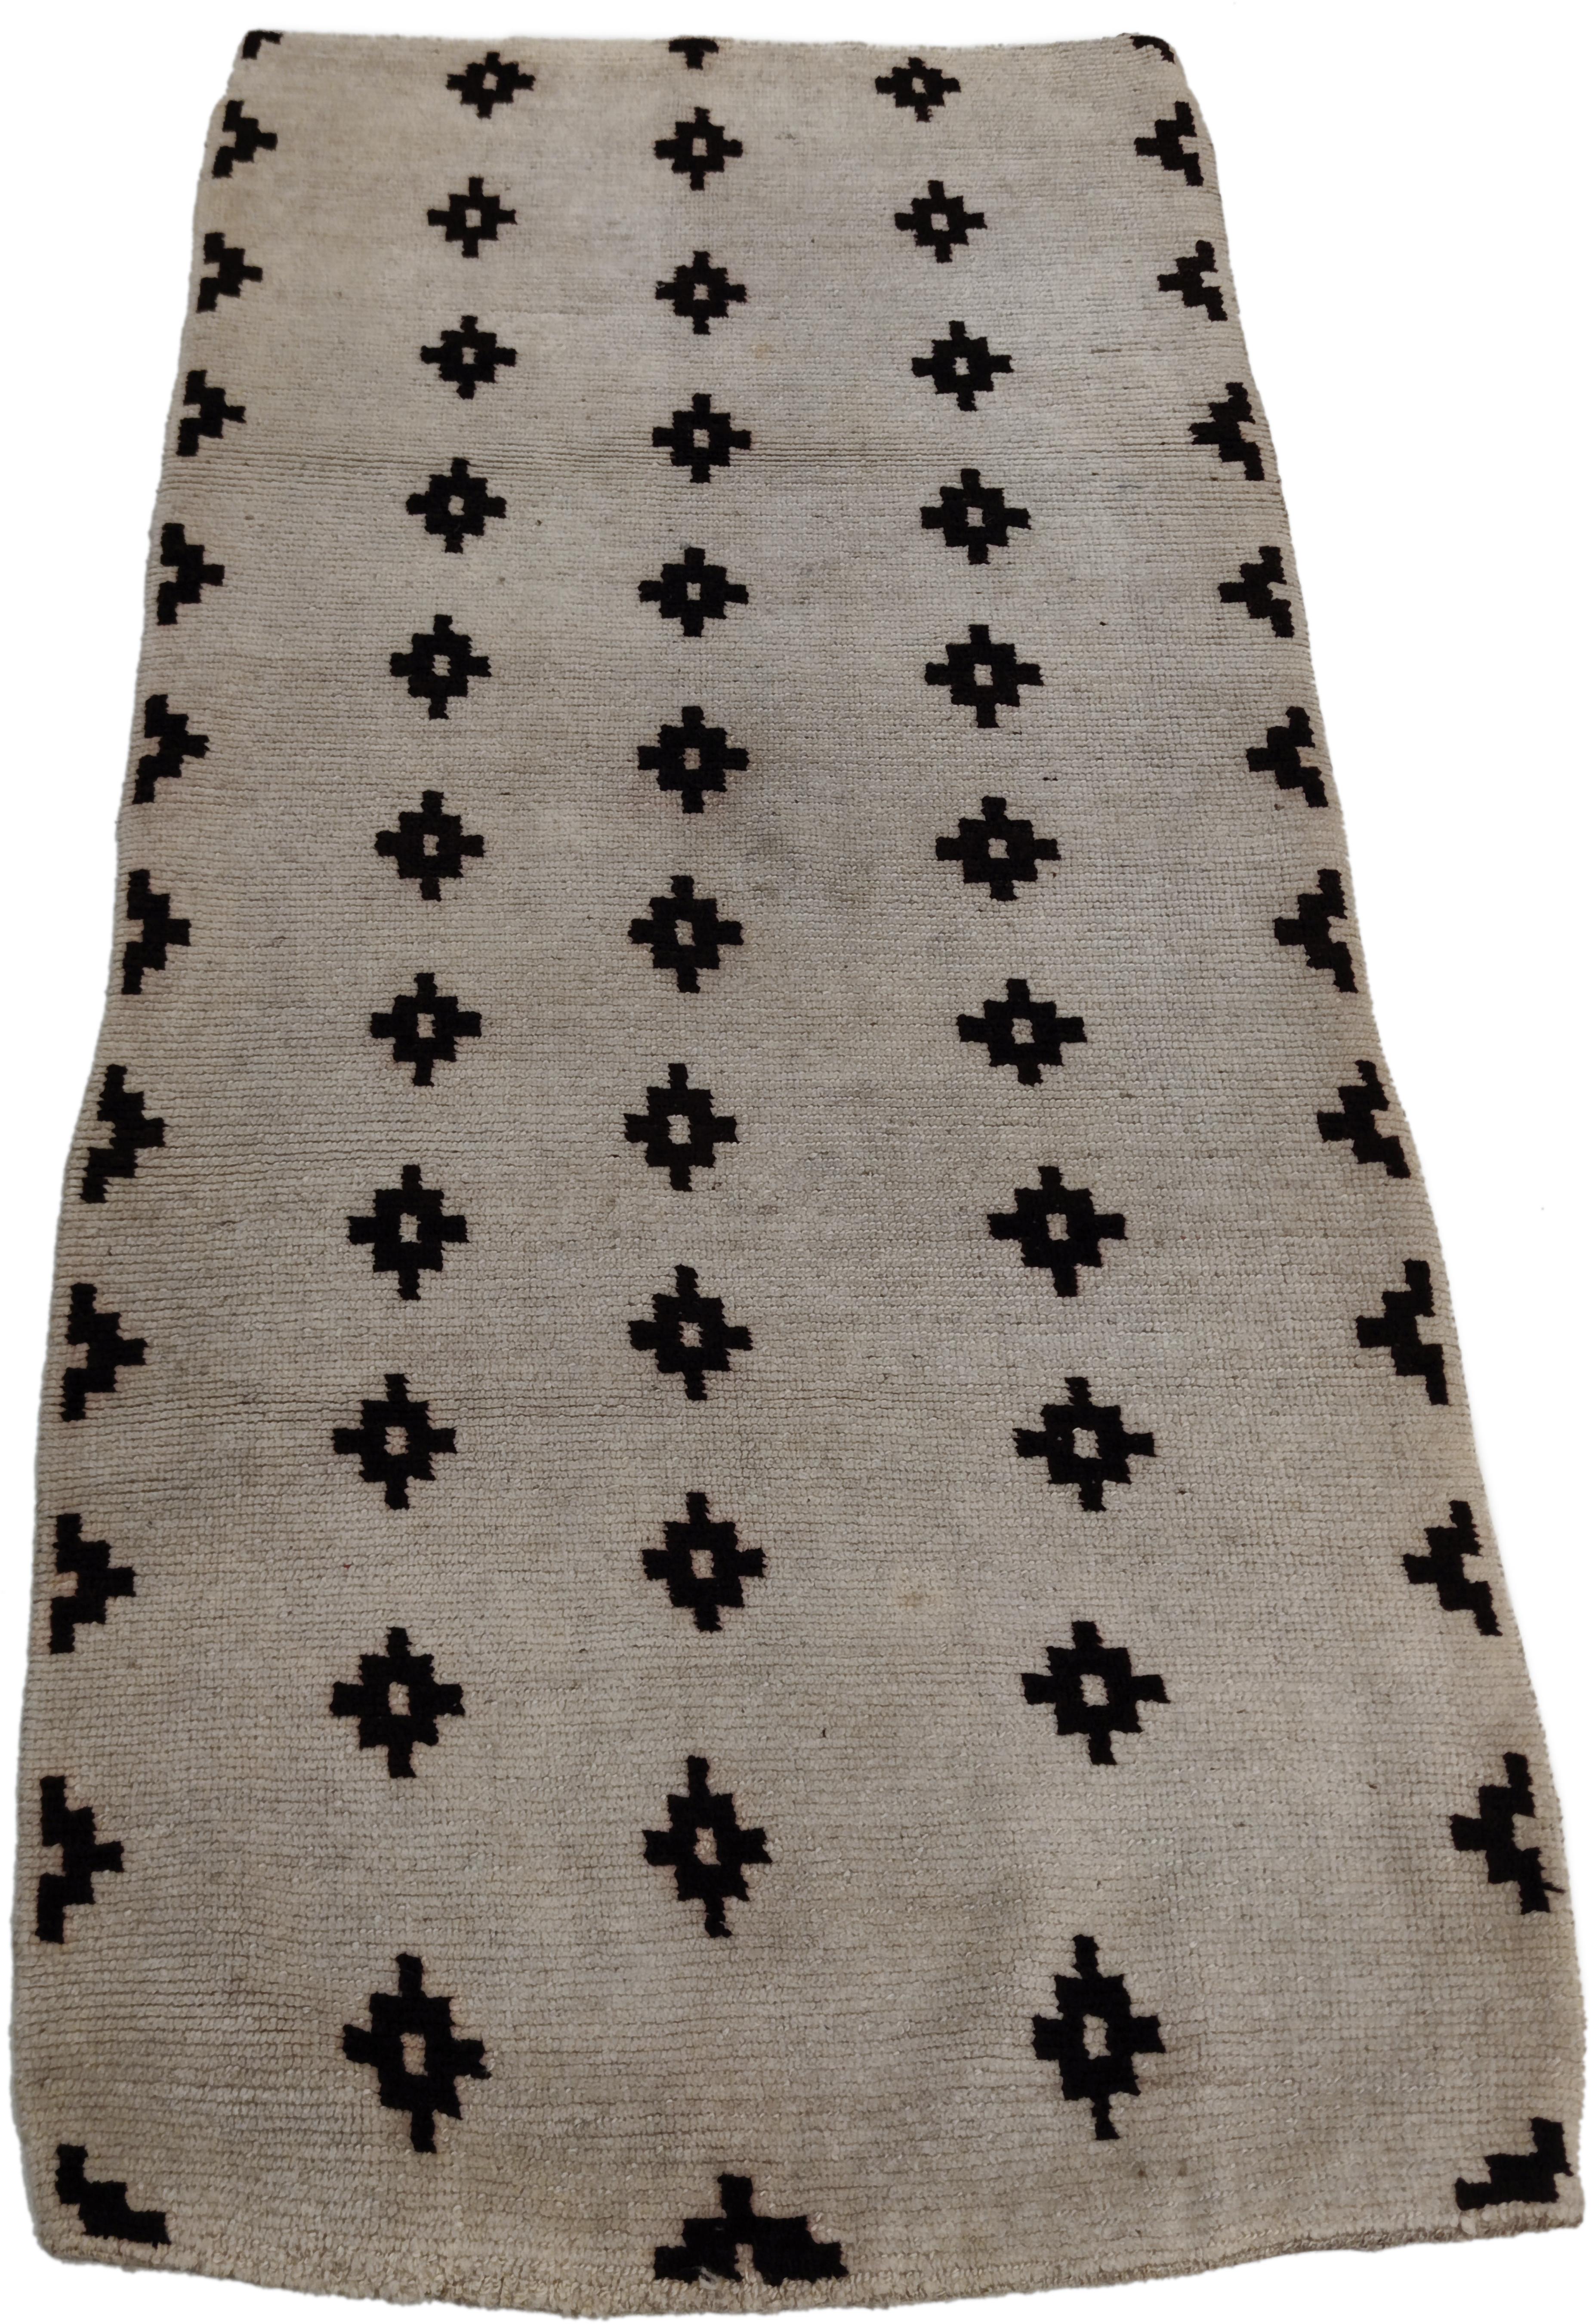 Un rare et élégant tapis tibétain au format khaden qui se distingue par un fond blanc comme la neige décoré par une répétition infinie de rangées parallèles et décalées de diamants noirs étagés, créant une composition chromatiquement équilibrée. Les